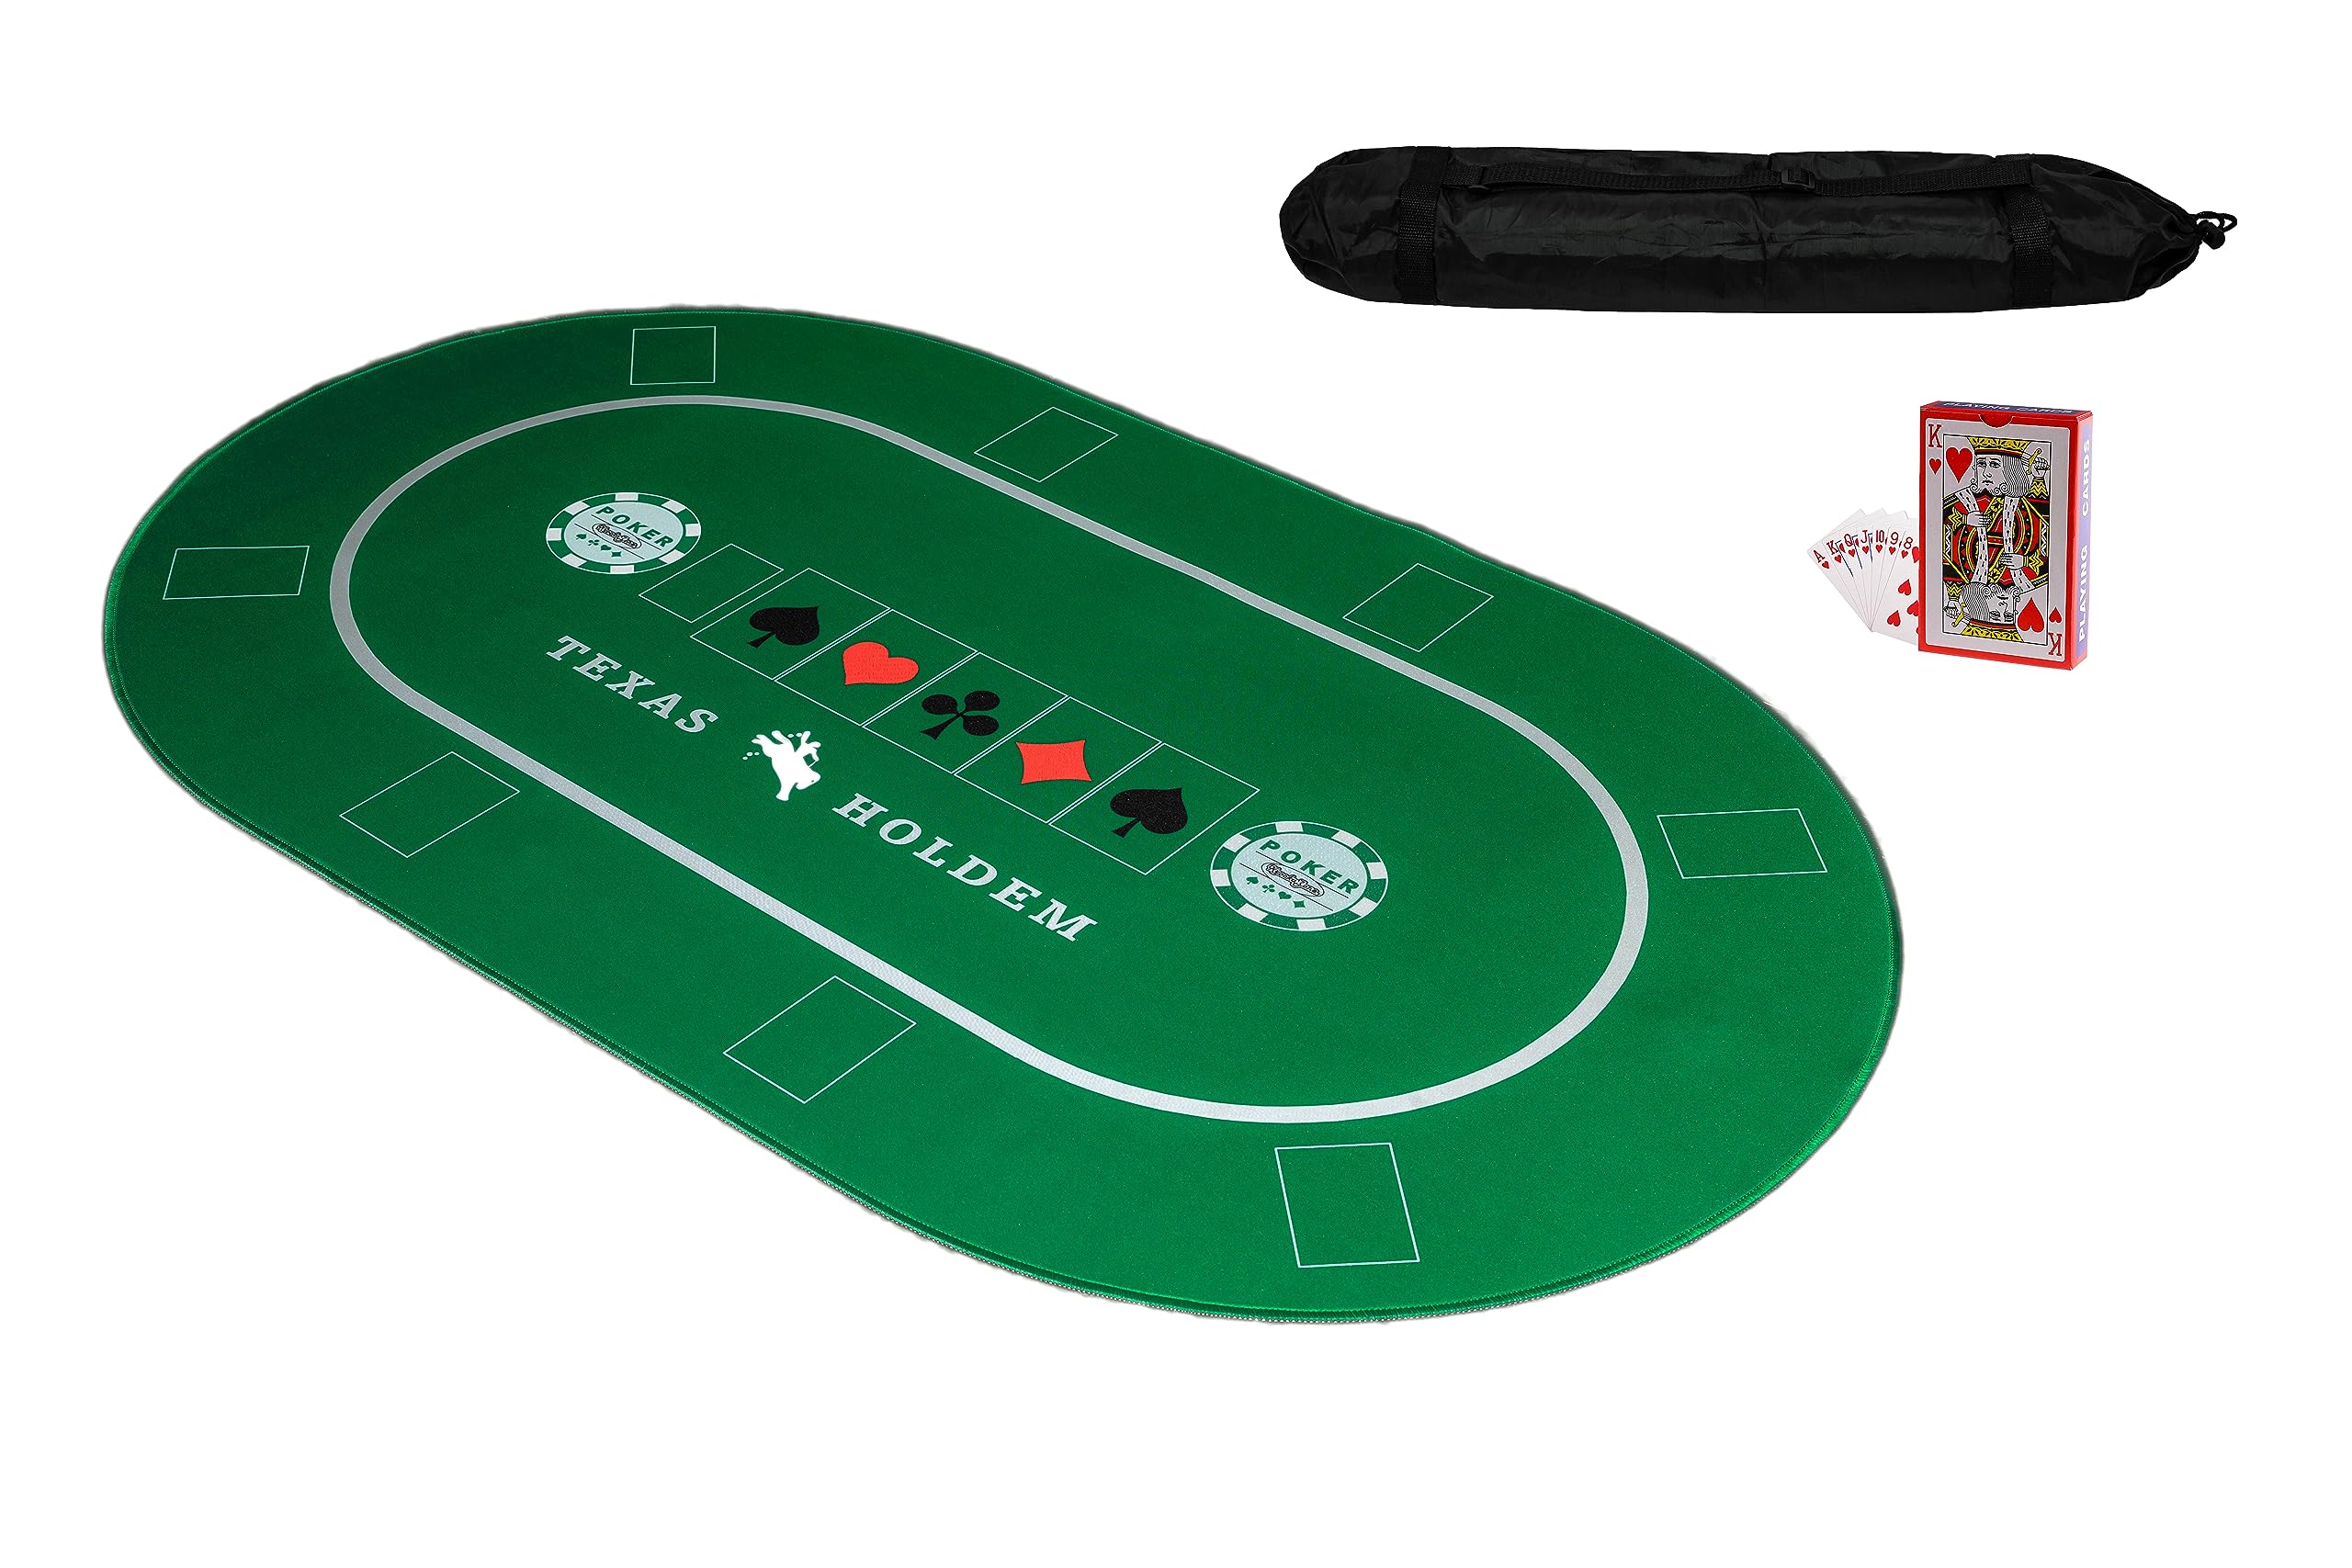 KrockaZone. XXL Profi Pokermatte 100 x 60cm + Tragetasche & Karten Set - Unterlage Pokertisch, Poker Tischauflage, Pokerteppich, Pokertuch - grün